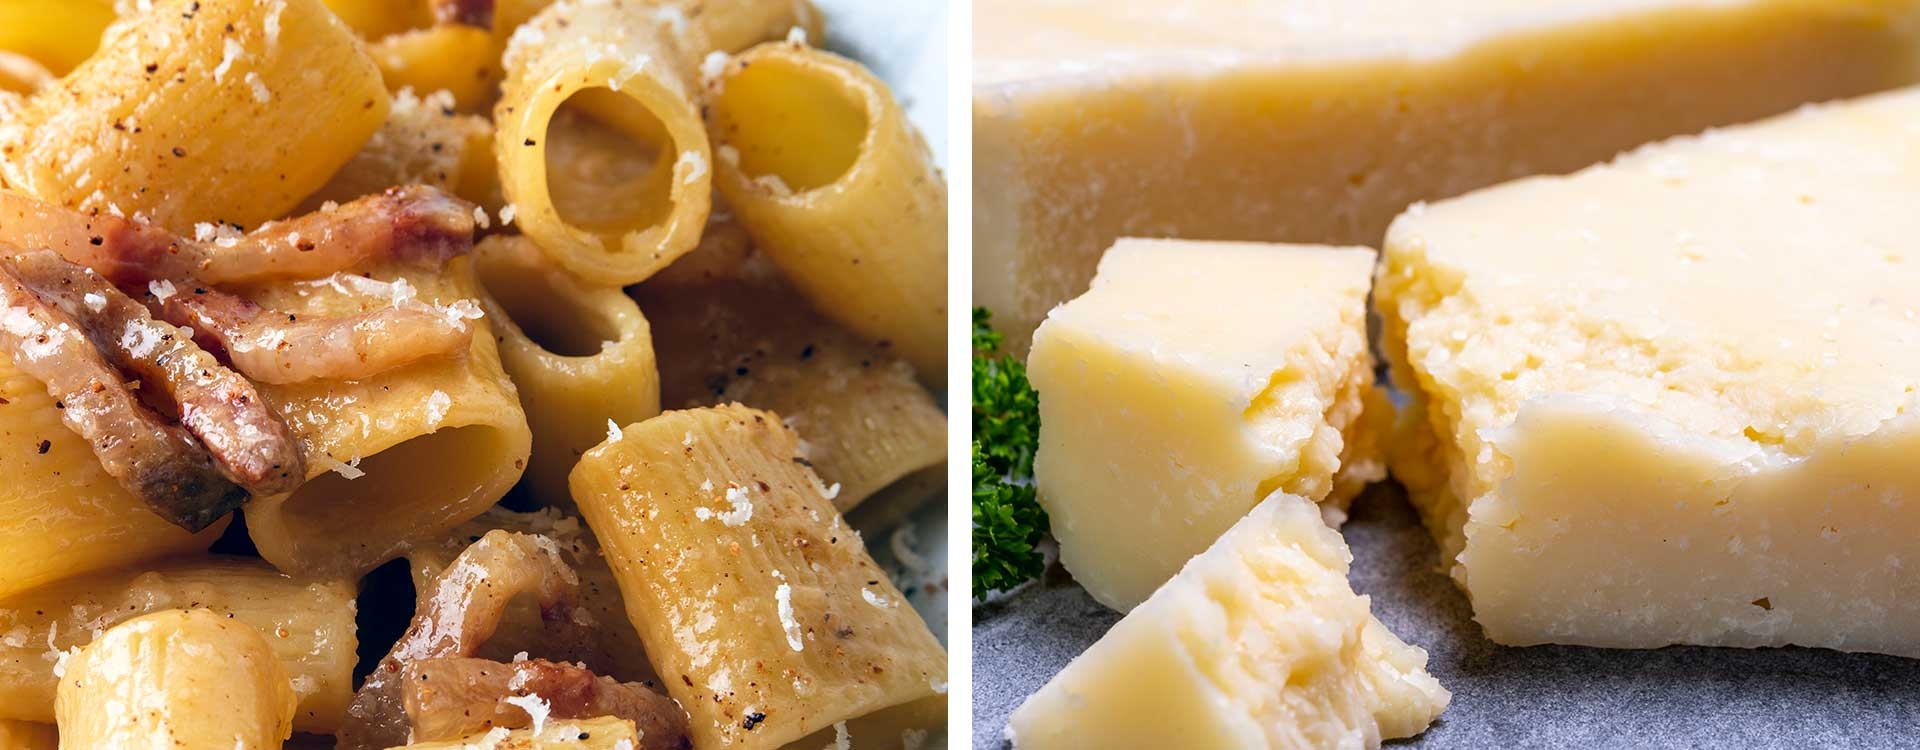 Eine Reise durch Latium zur Entdeckung vom echten Pecorino-Käse